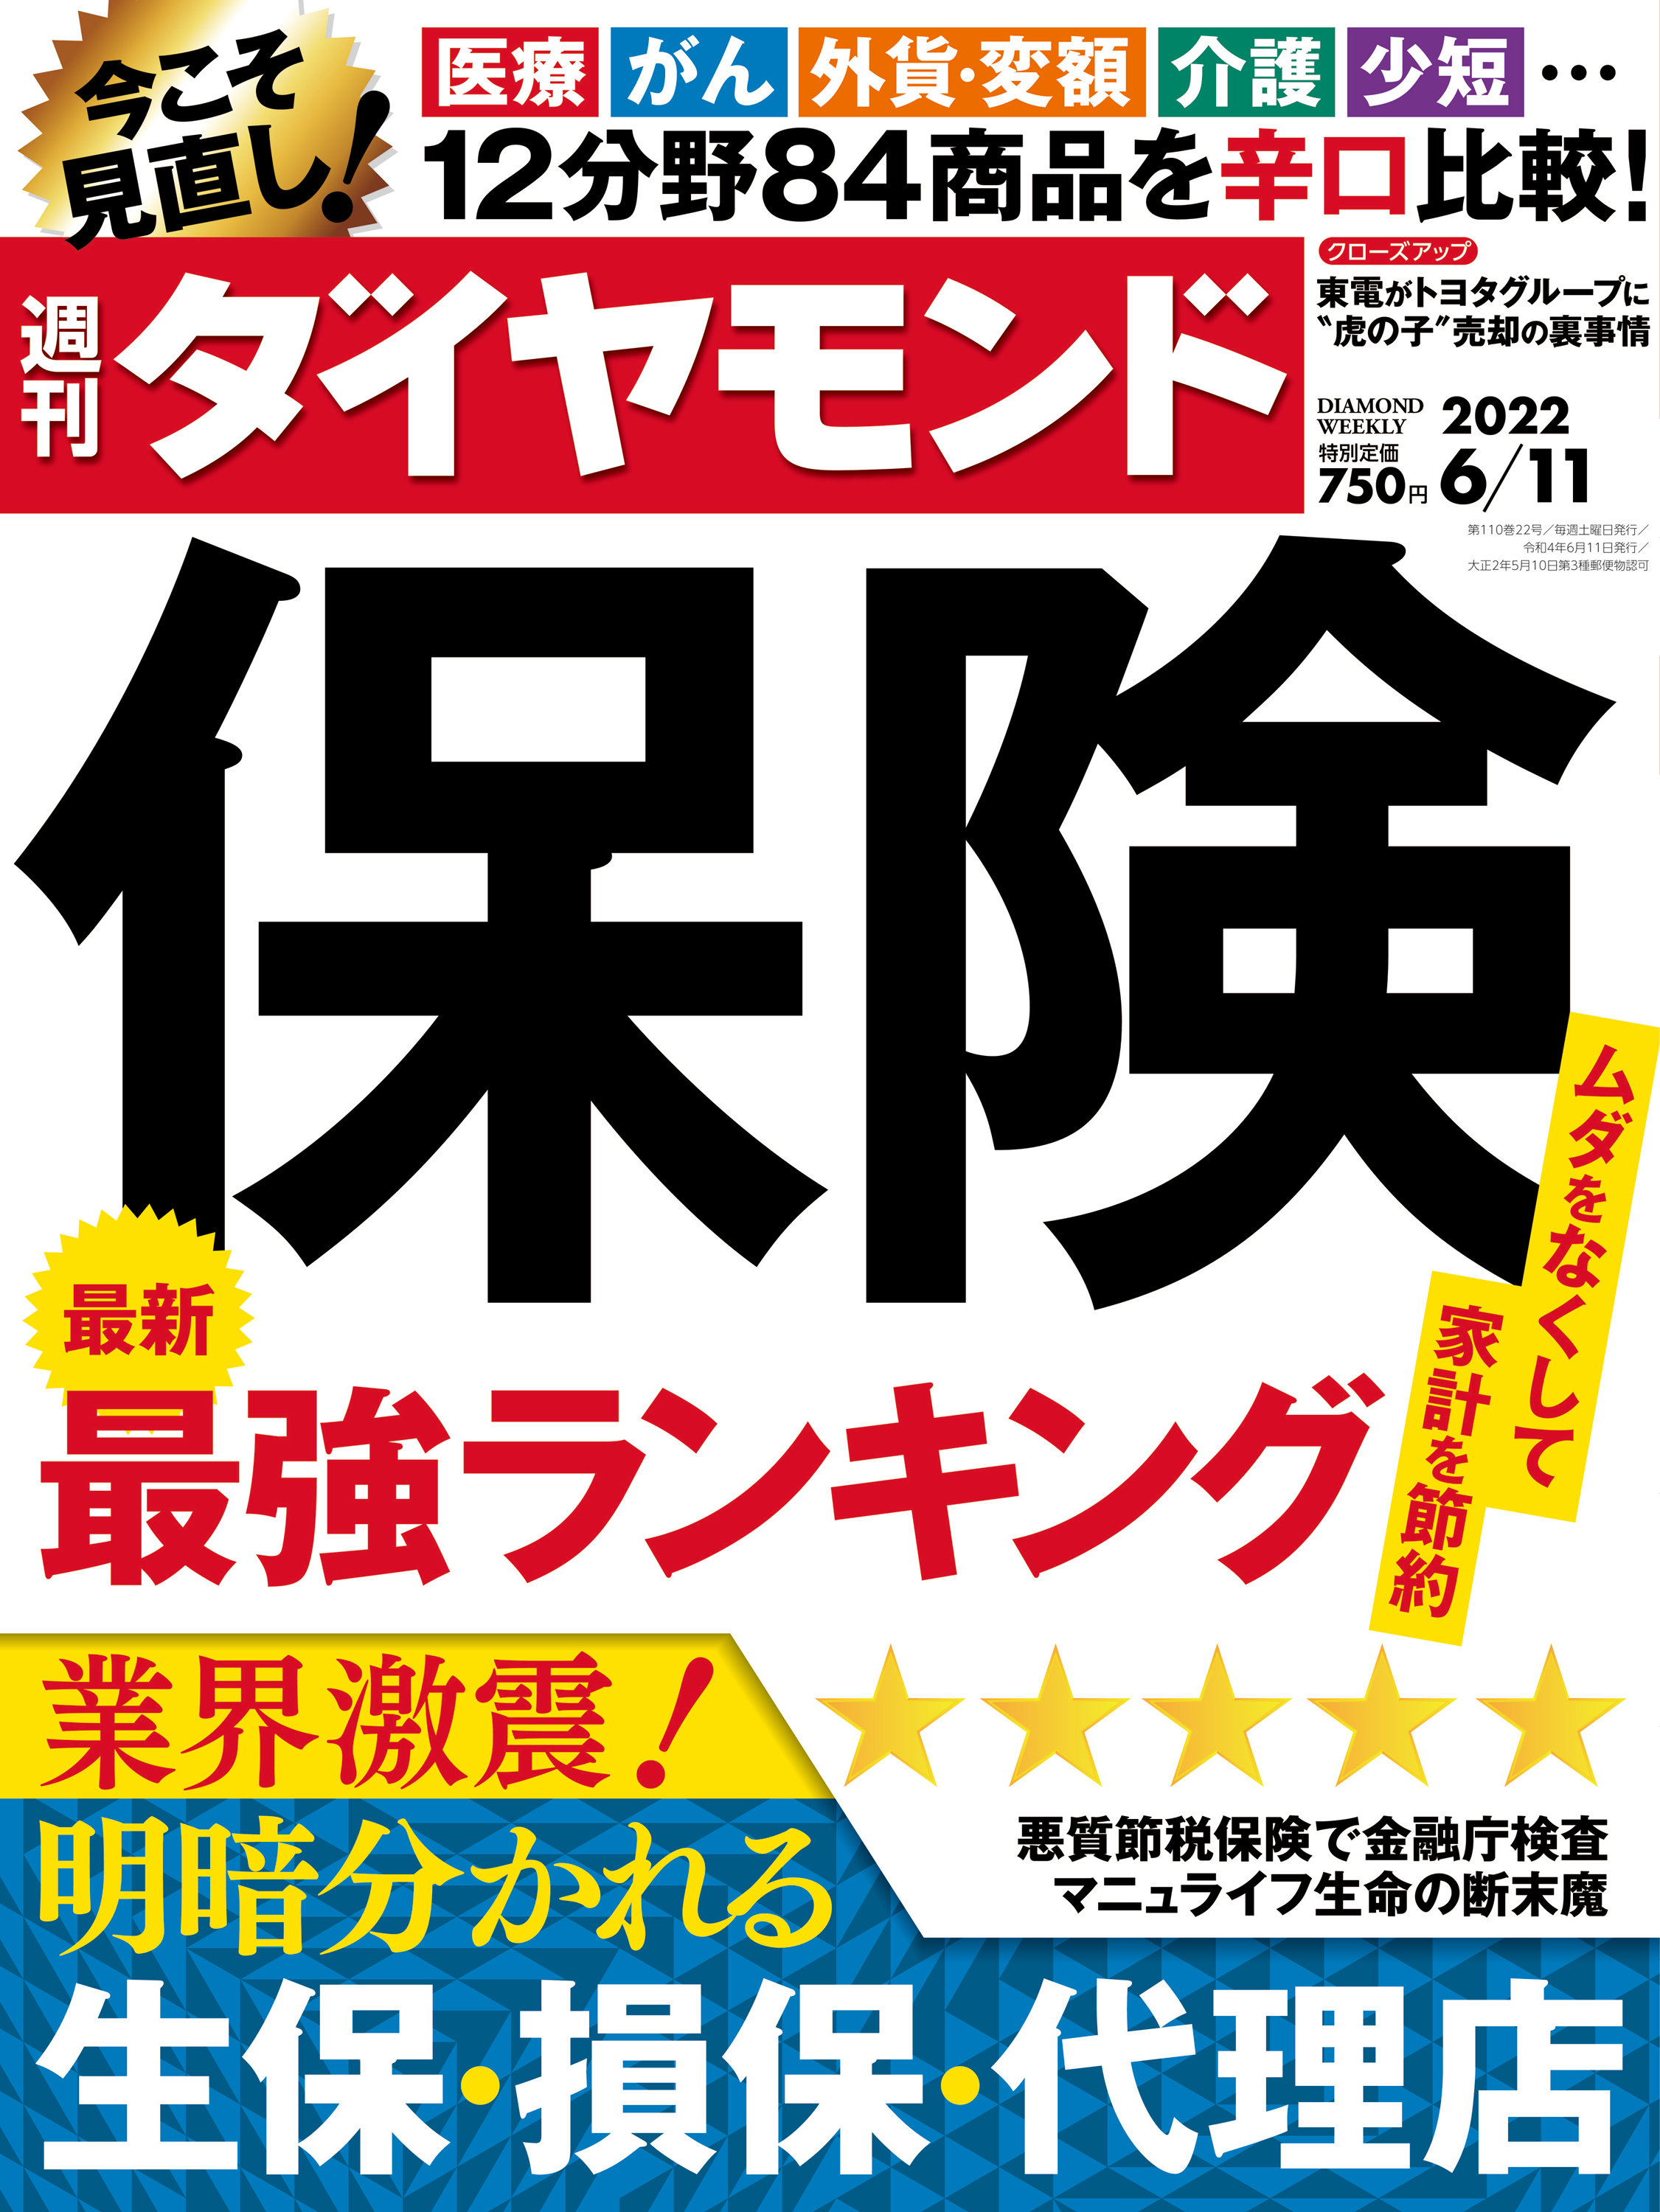 保険最強ランキング(週刊ダイヤモンド 2022年6/11号) - ダイヤモンド社